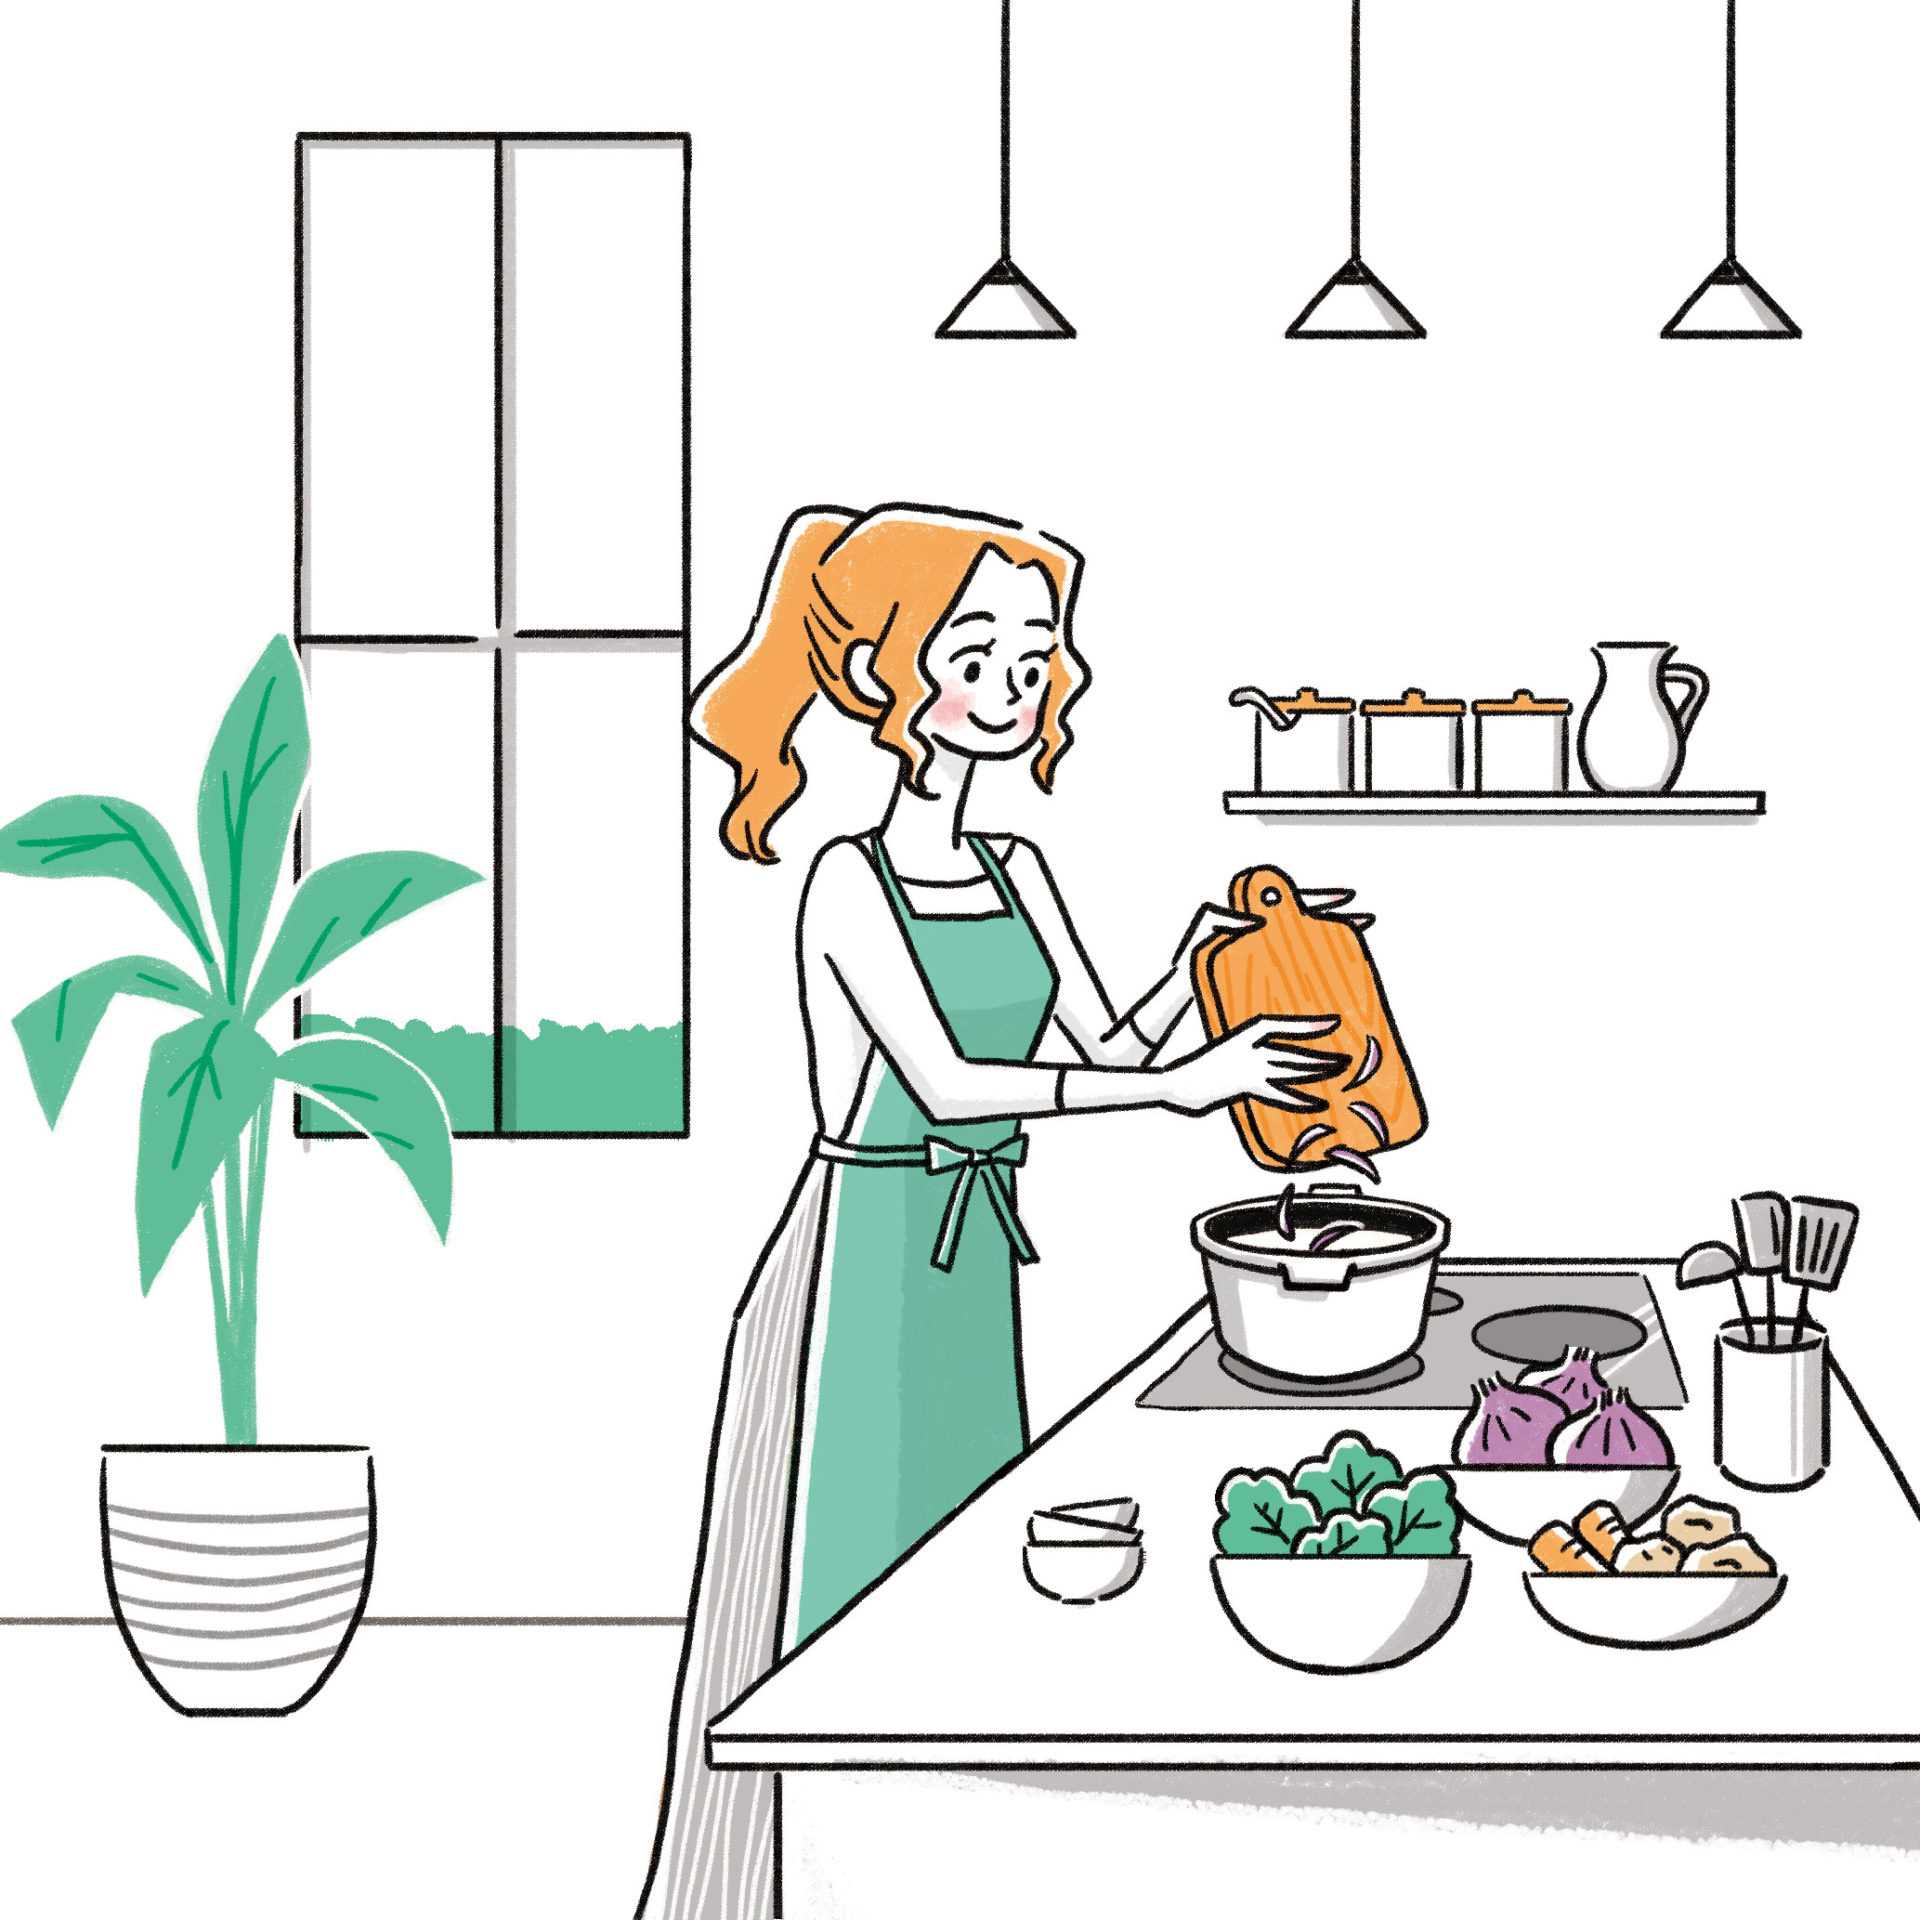 キッチンで料理をする女性のイラストカット。 お鍋に材料を入れるシーン。